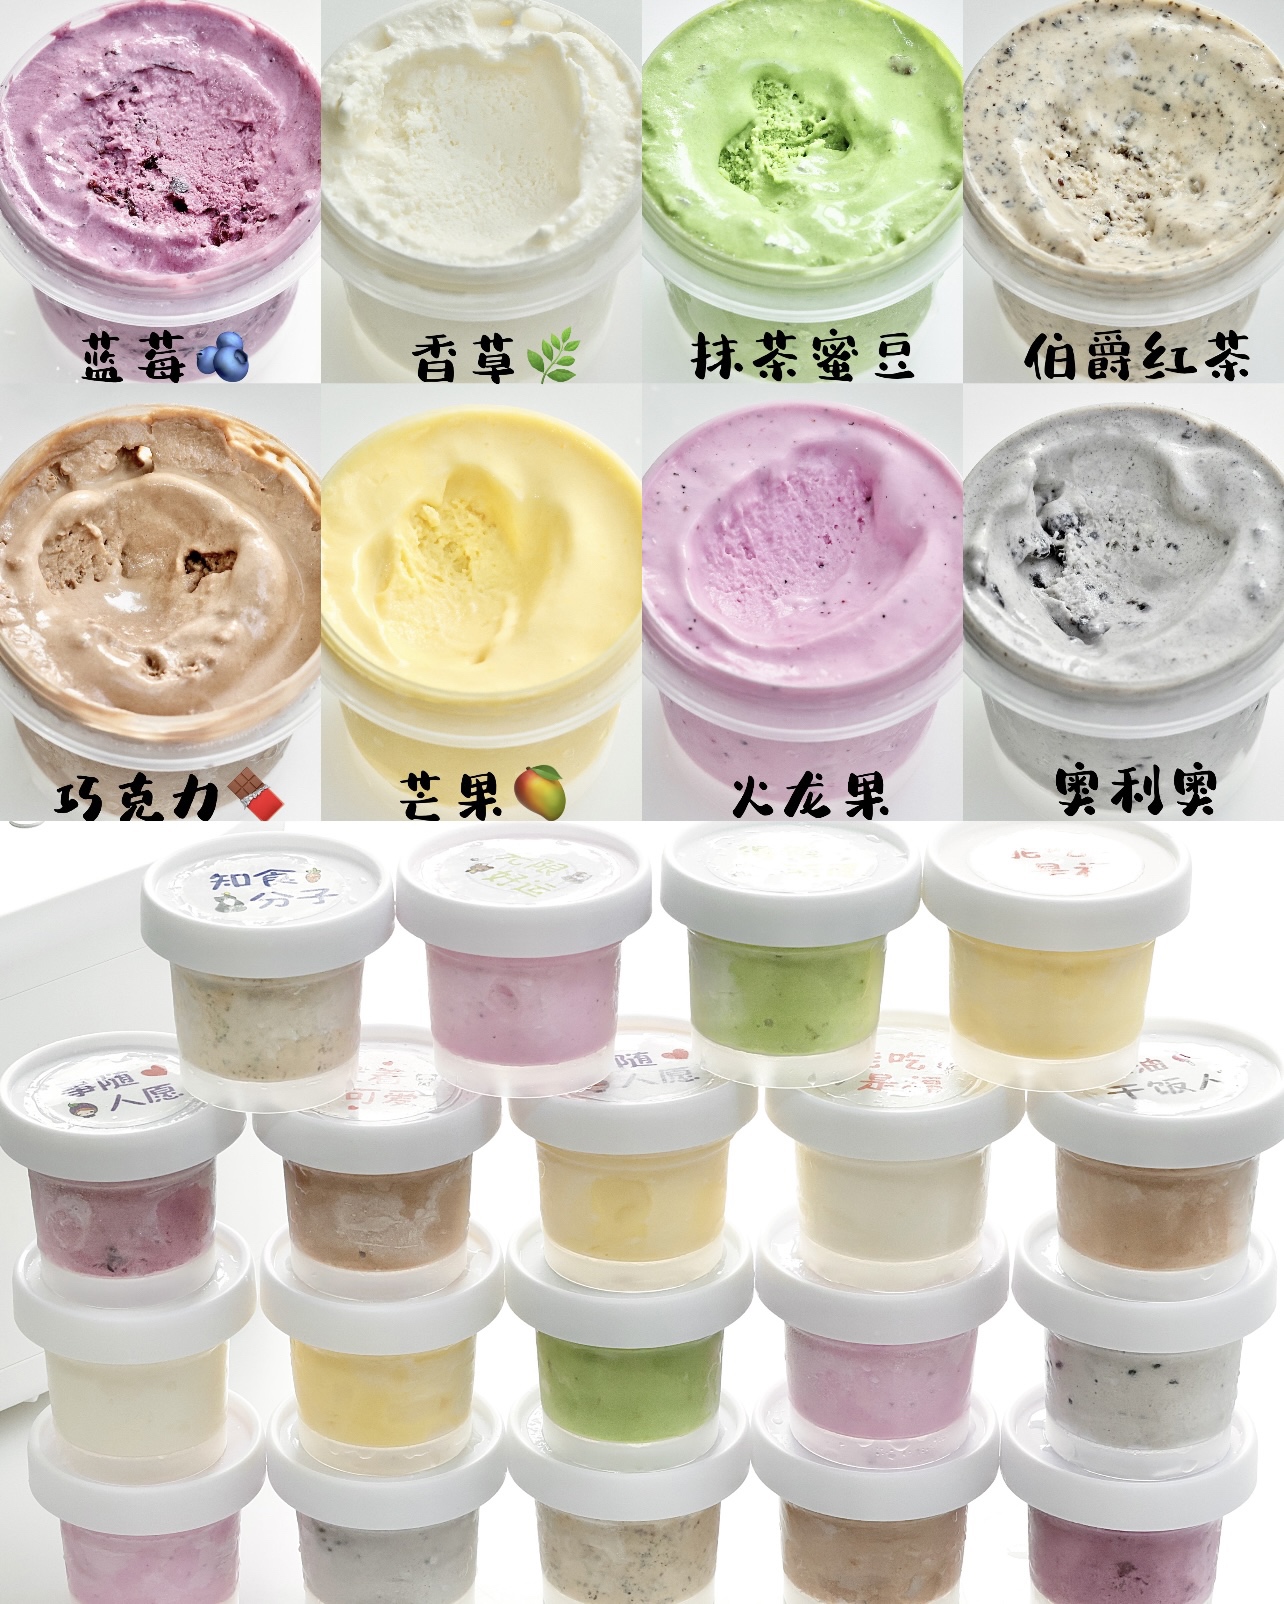 8种口味冰淇淋🍦/顺滑无冰渣/夏日必备